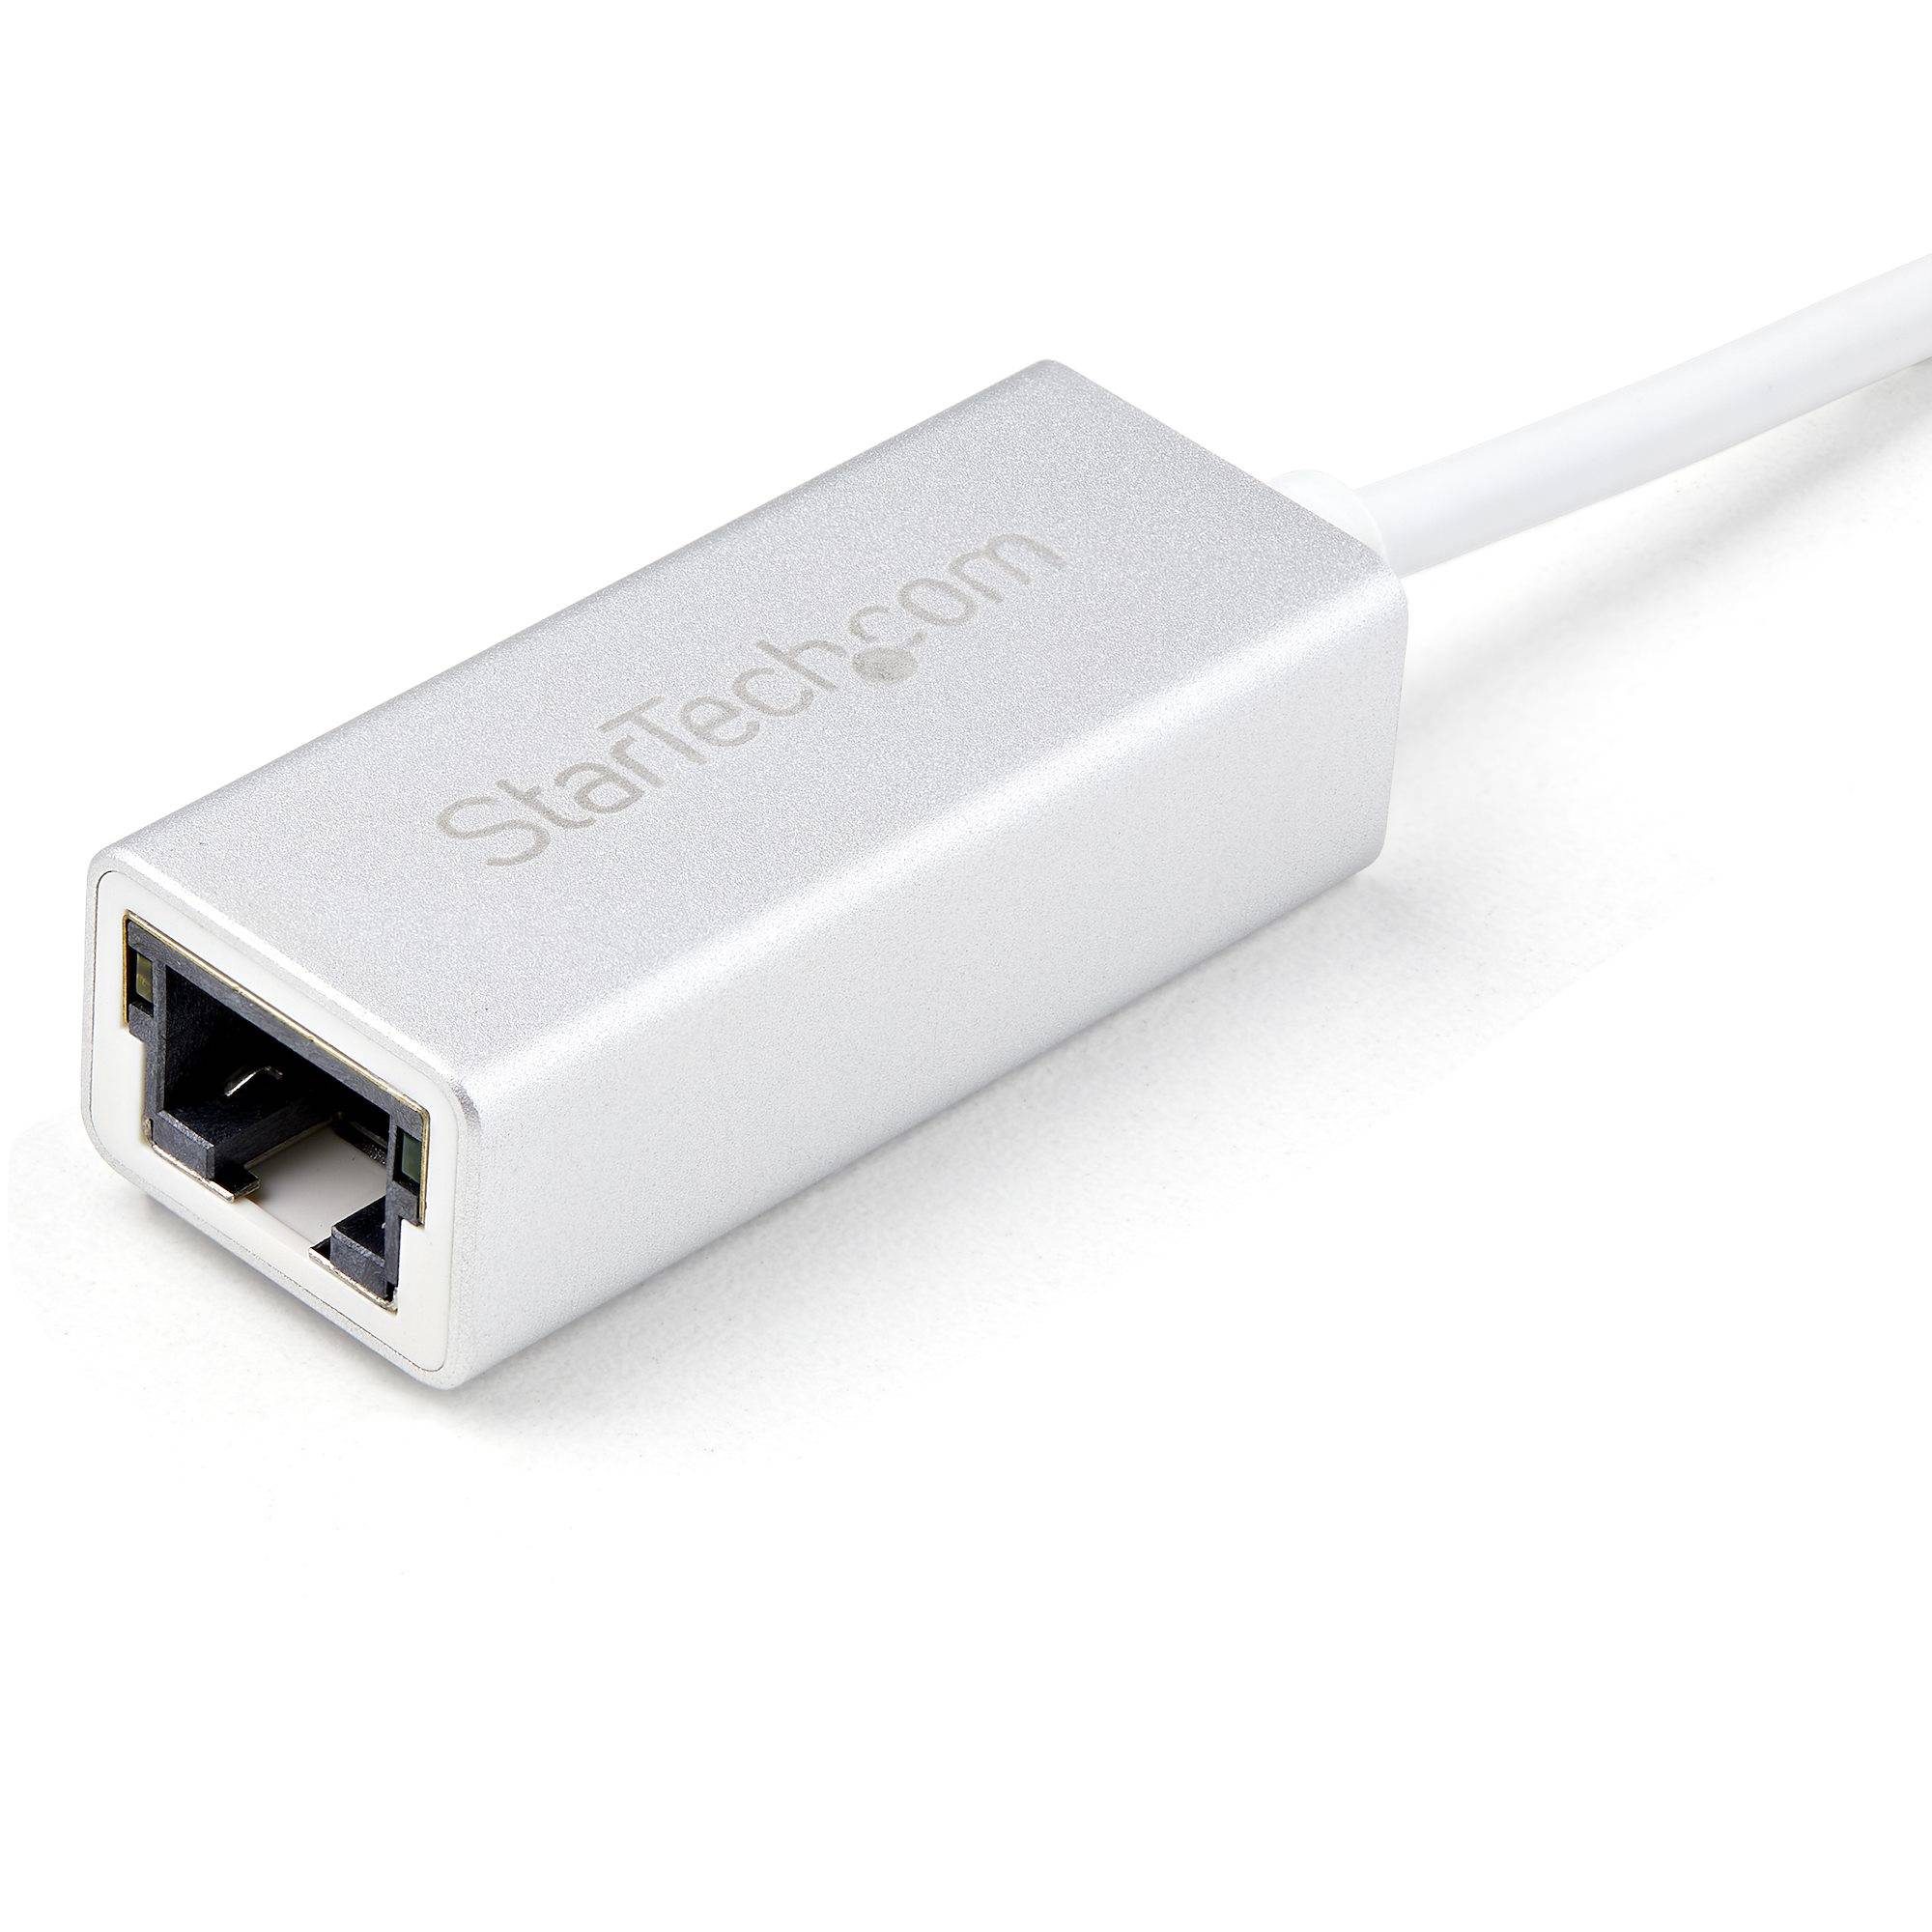 Rca Informatique - image du produit : ADAPTATEUR RESEAU USB 3.0 VERS GIGABIT ETHERNET - ARGENT